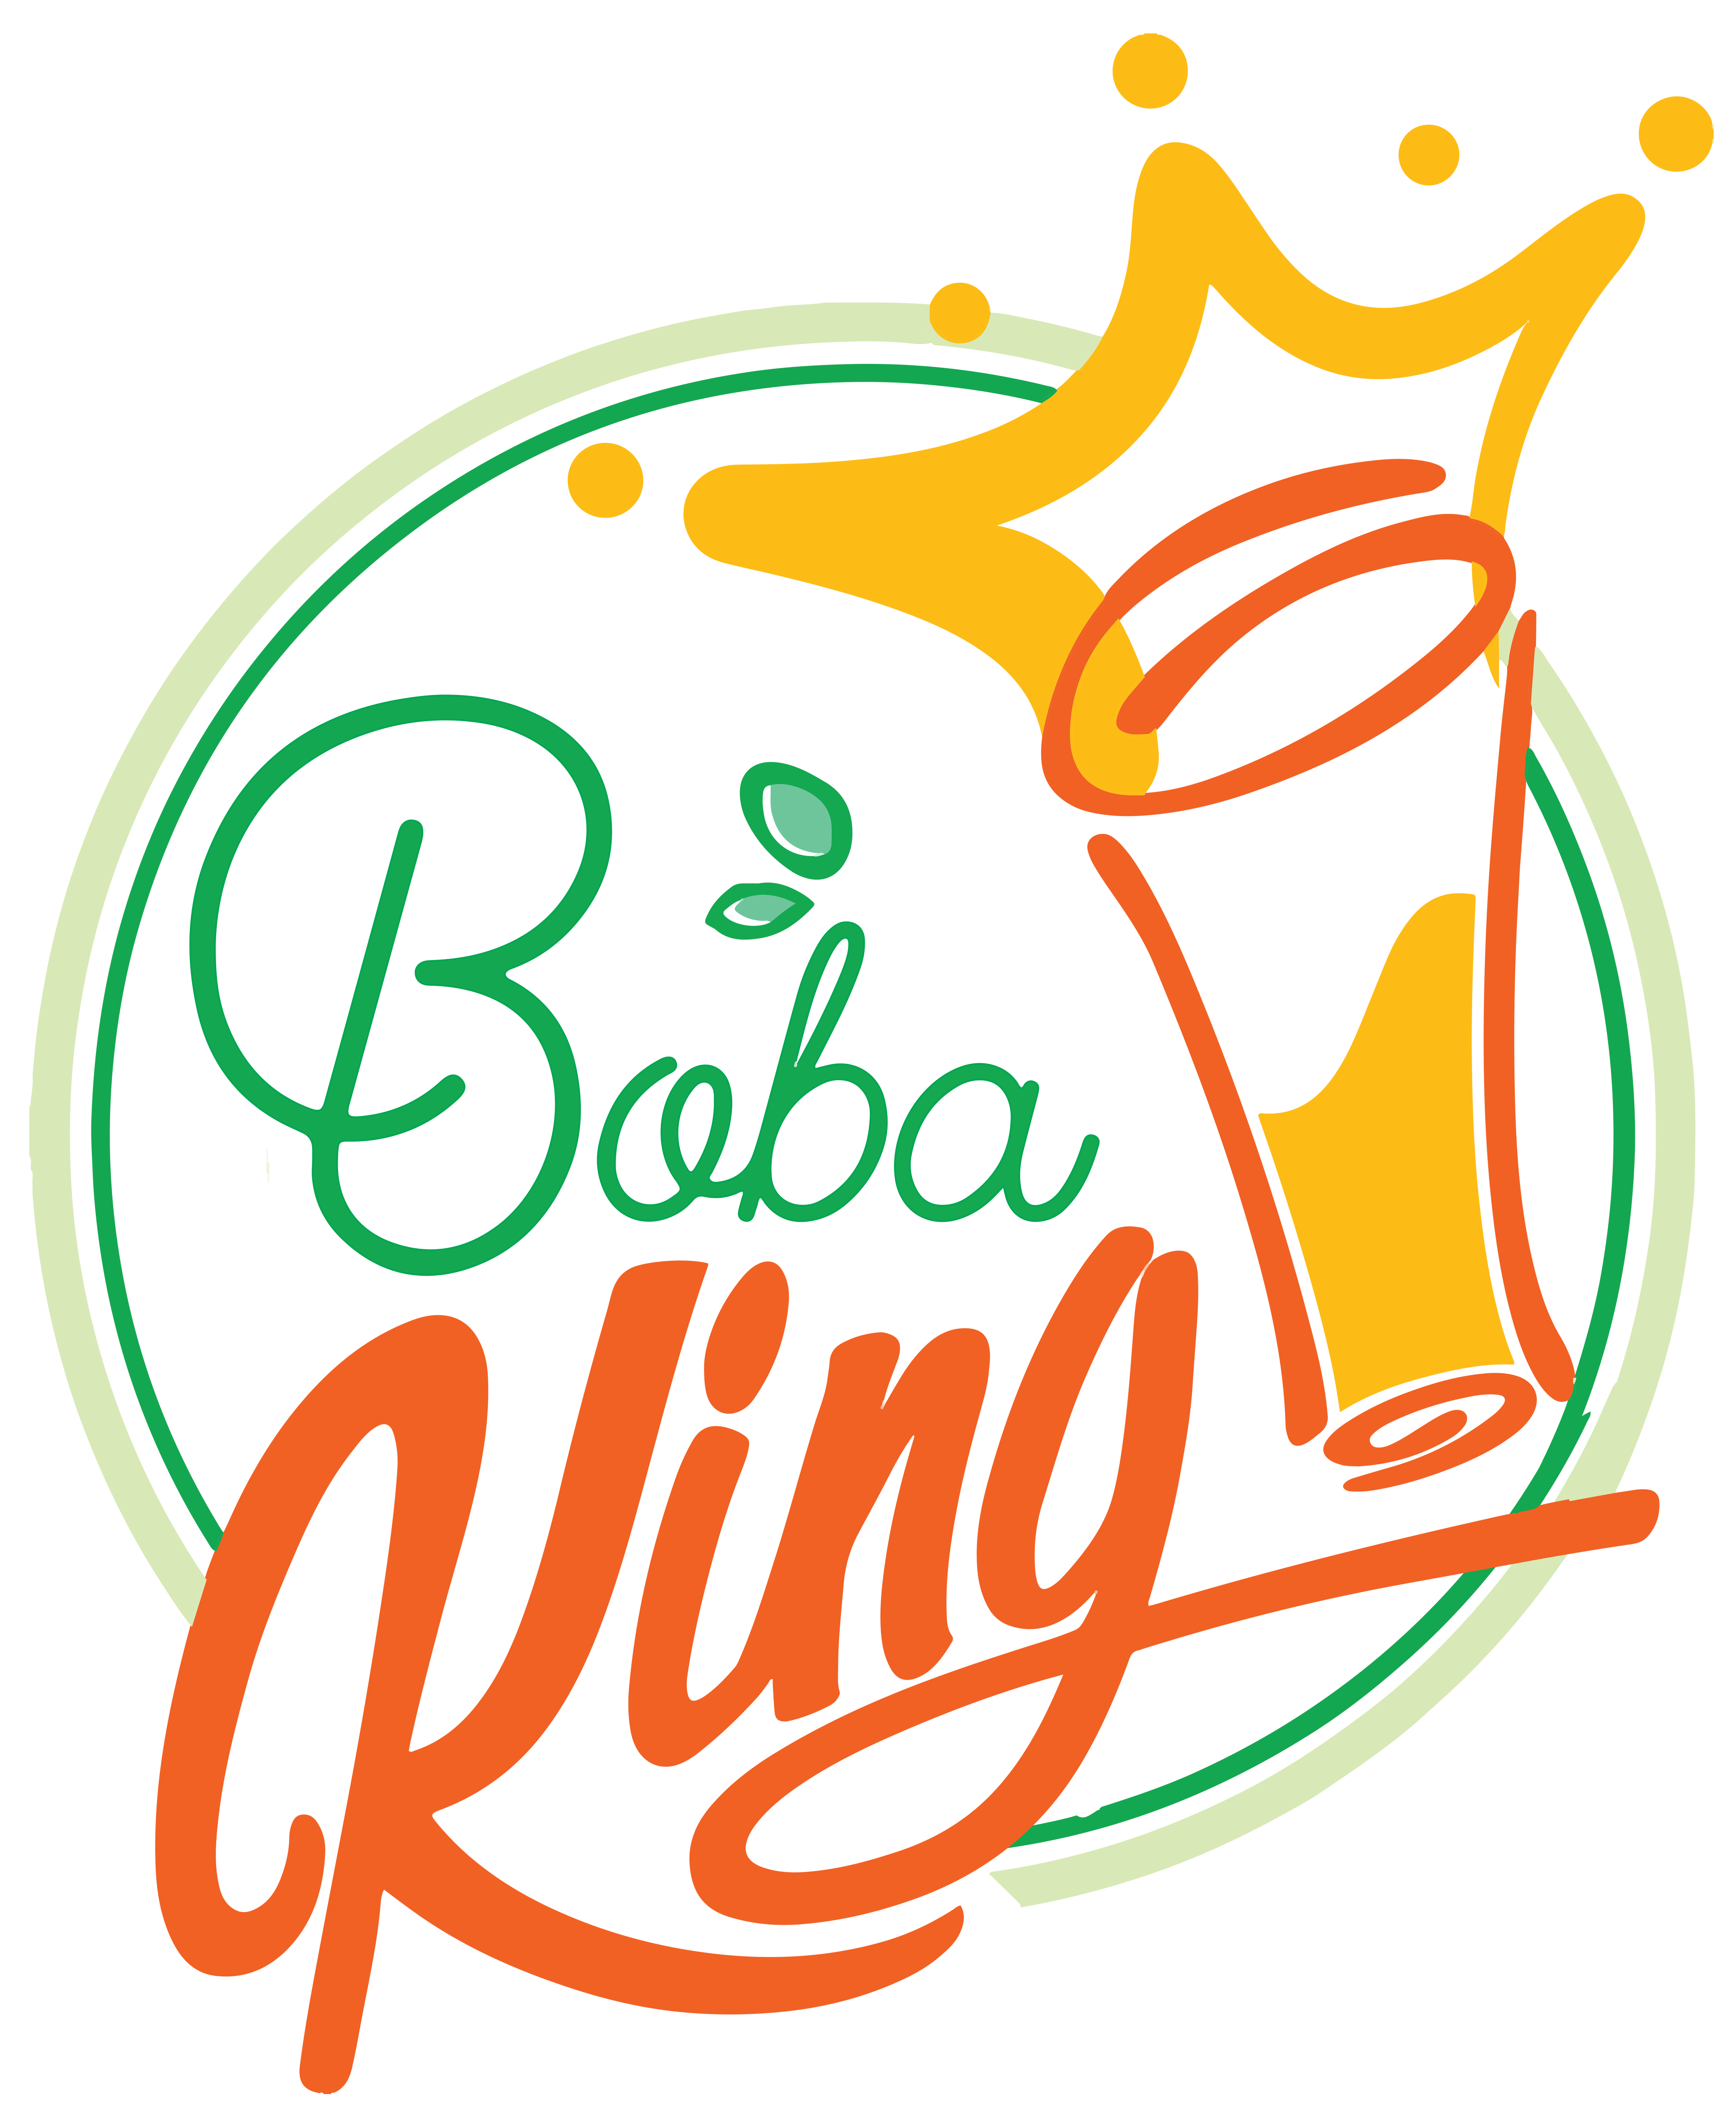 Boba King